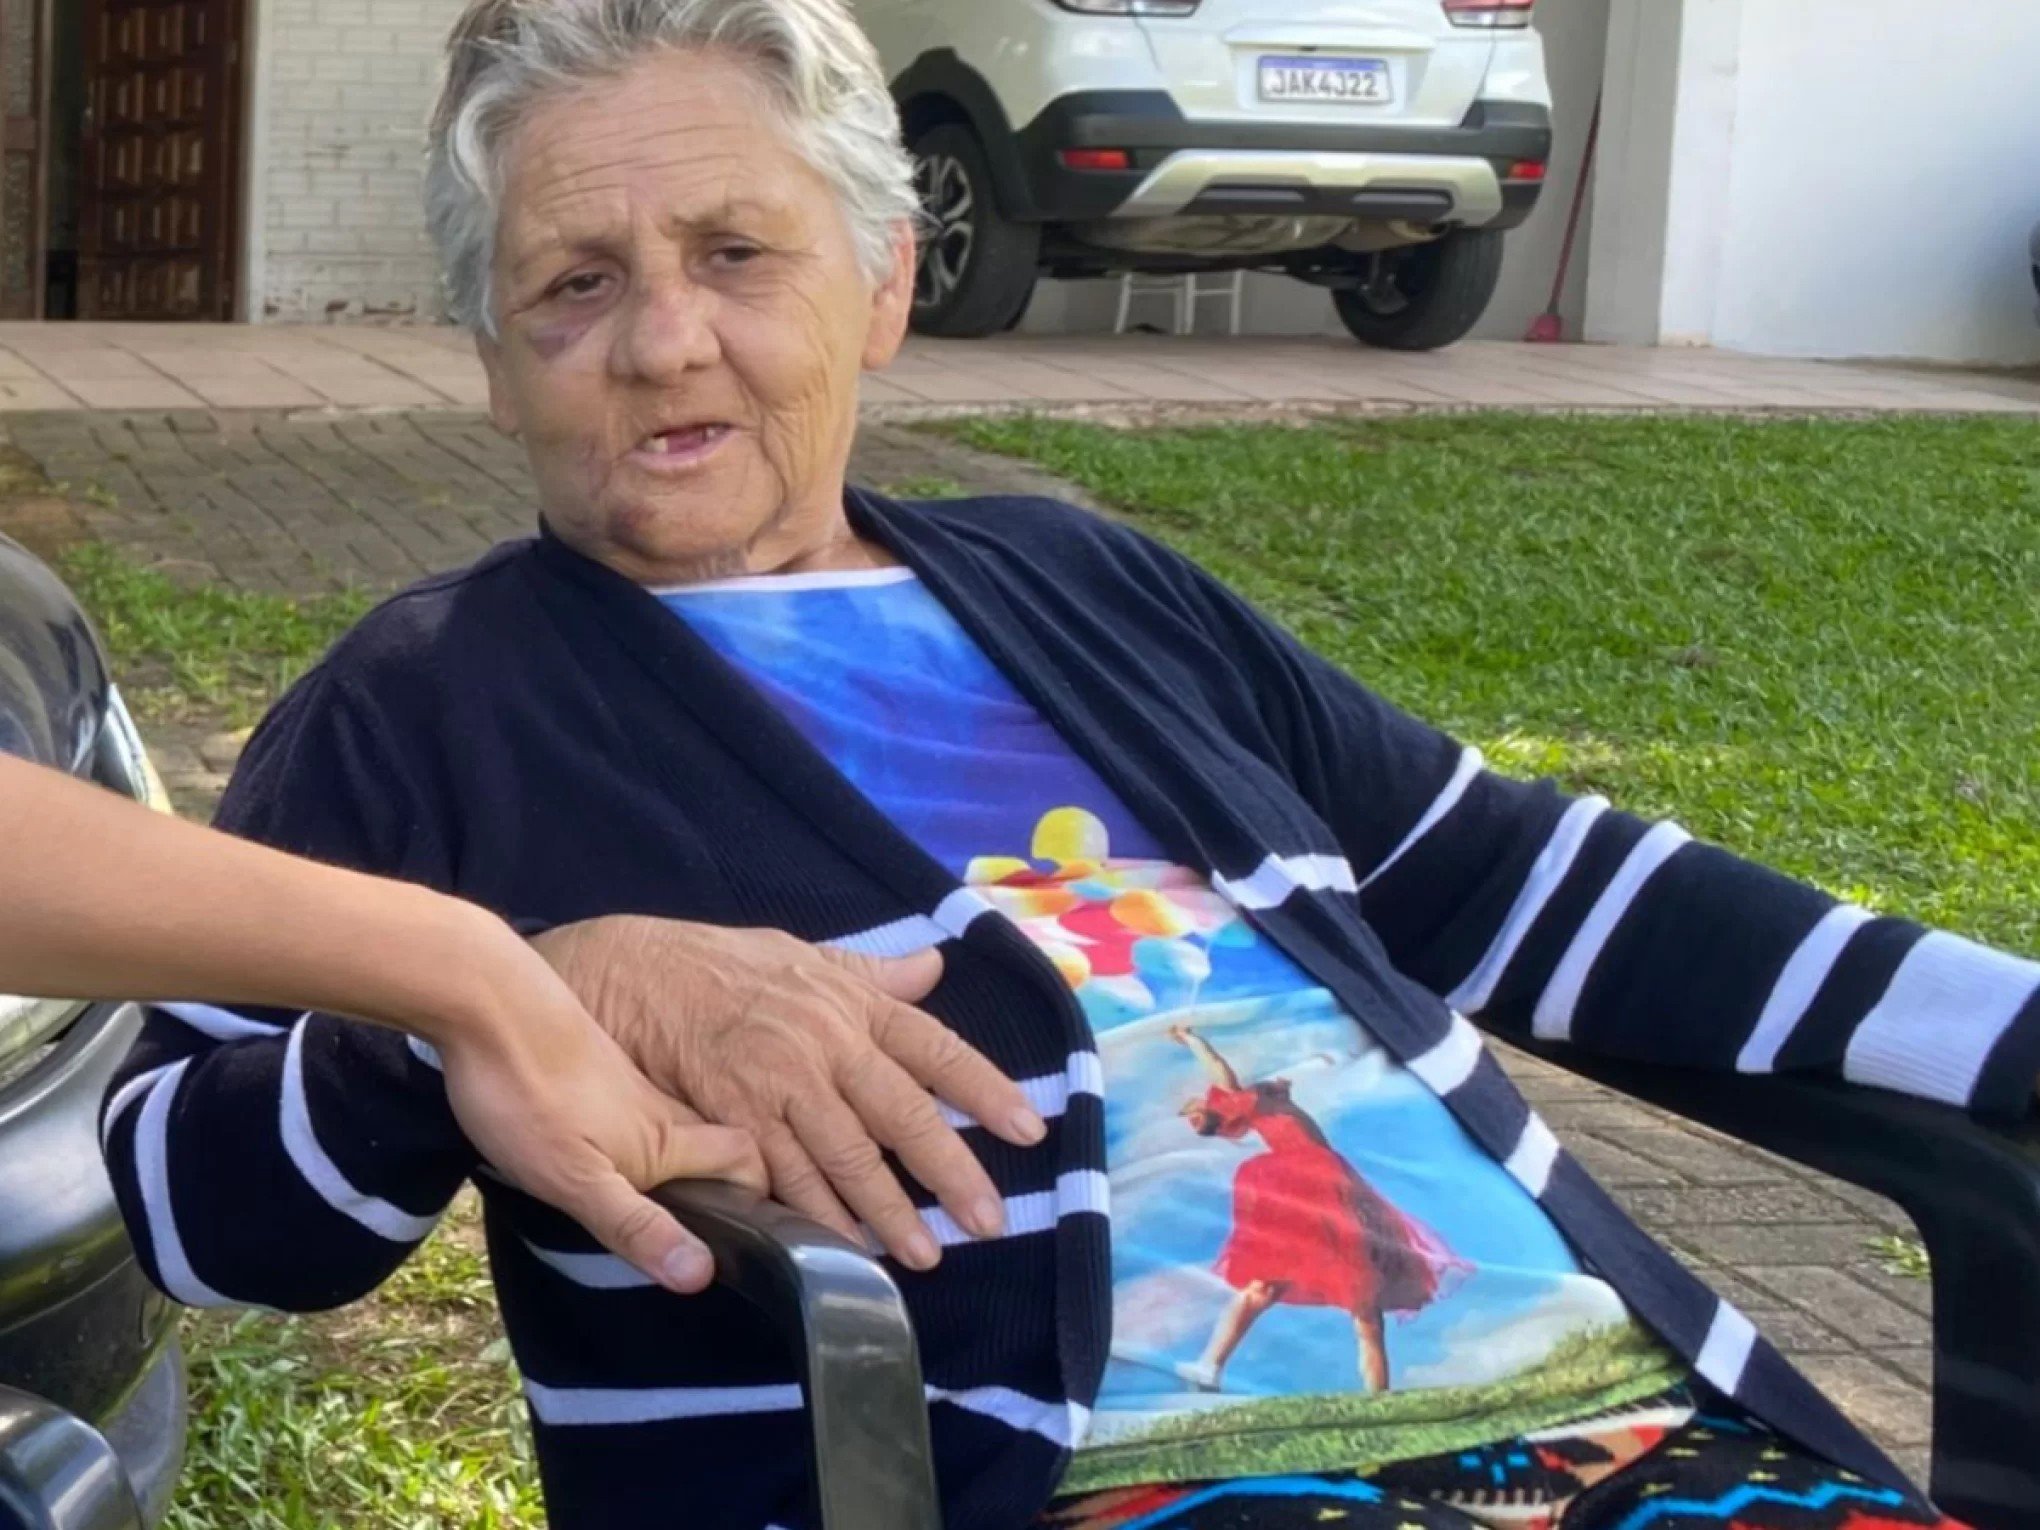 "Cada dia perco mais a esperança": Desaparecimento de idosa em asilo é cercado de mistério há mais de 4 meses